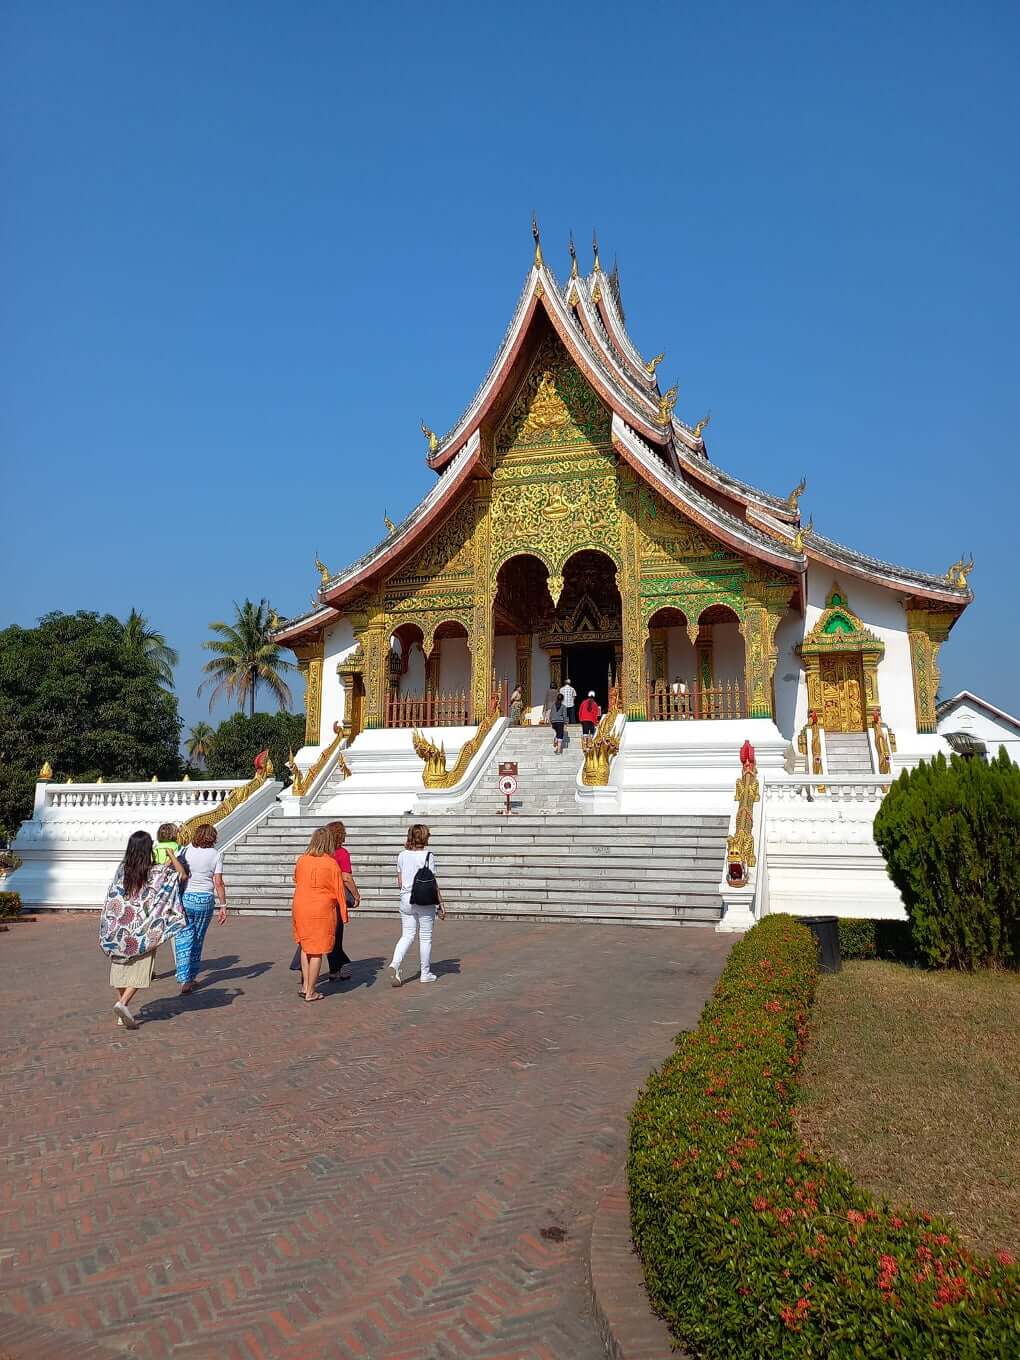 Authentic-Laos-Tour-9-Days-Museum-Luang-Prabang-1.jpg